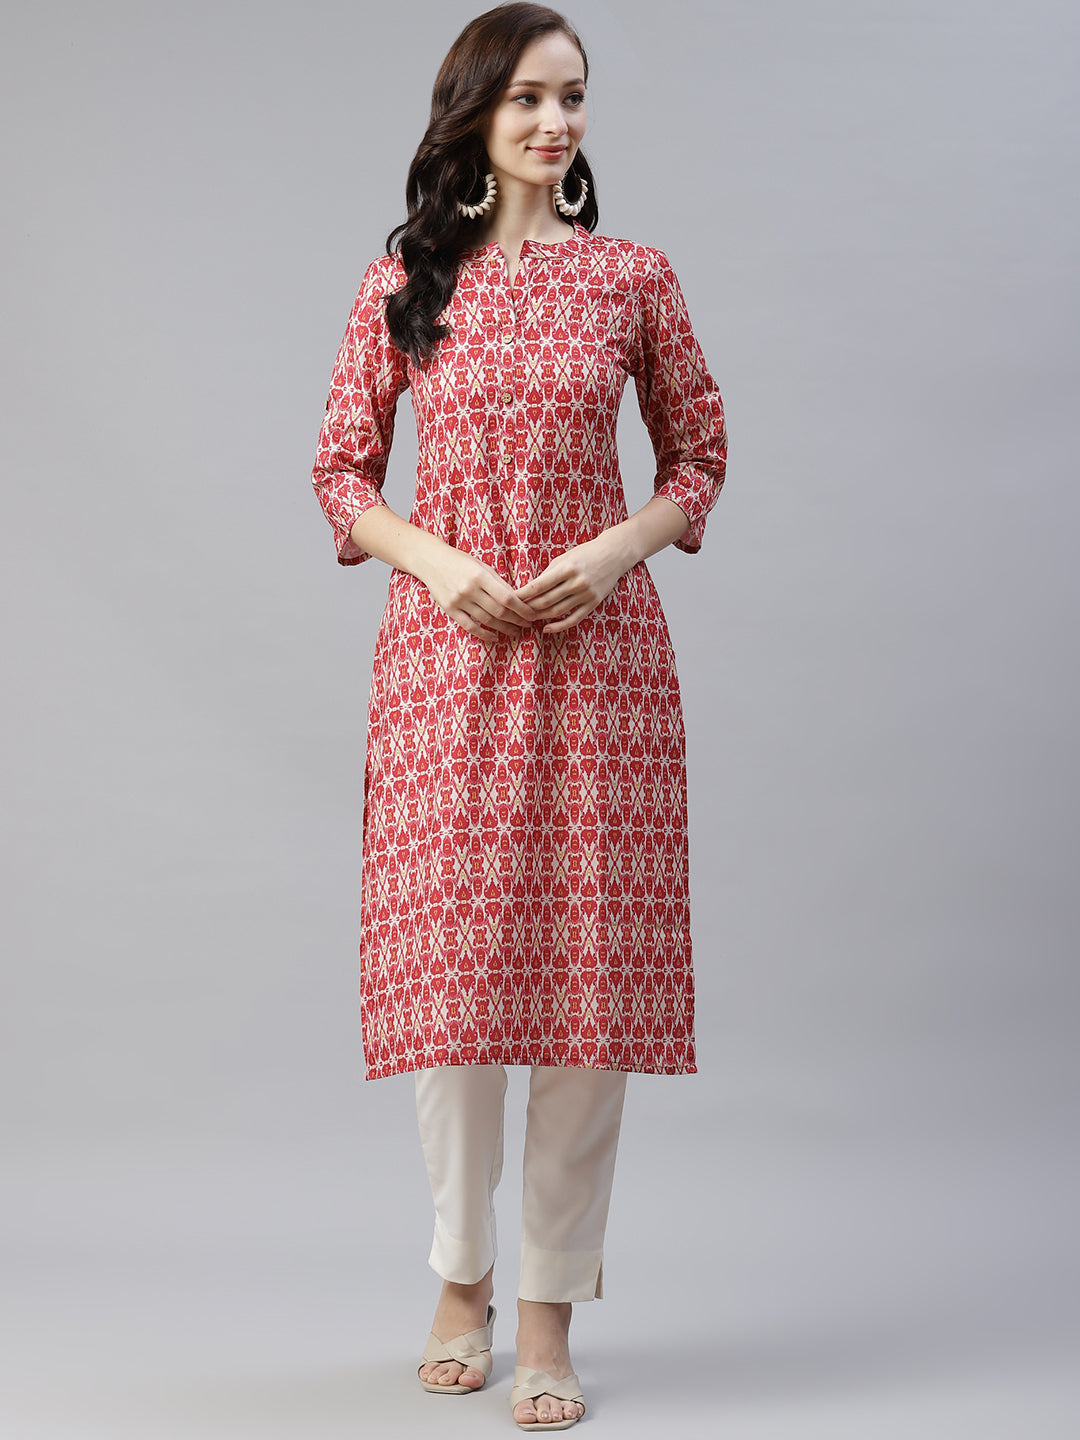 Women's Red Printed Kurta And White Pants by Ziyaa- (2pcs set)